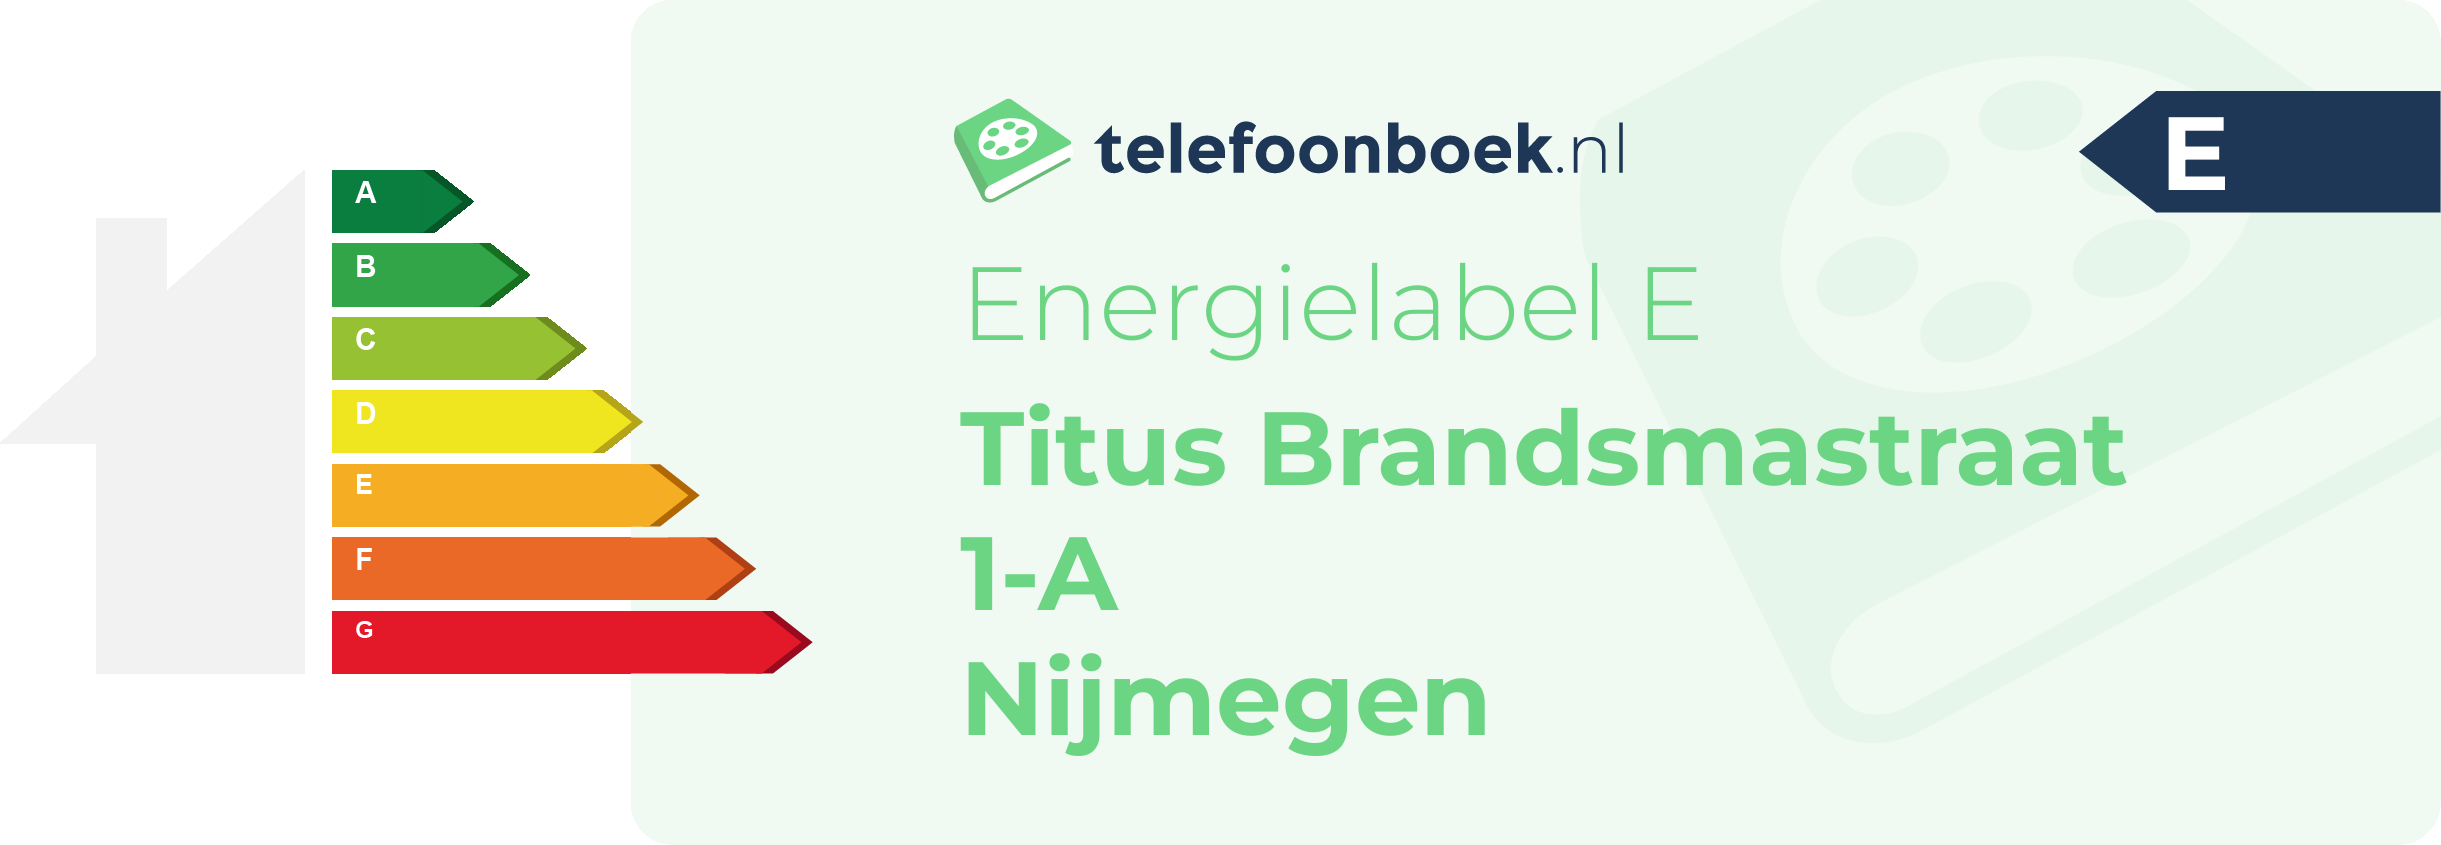 Energielabel Titus Brandsmastraat 1-A Nijmegen